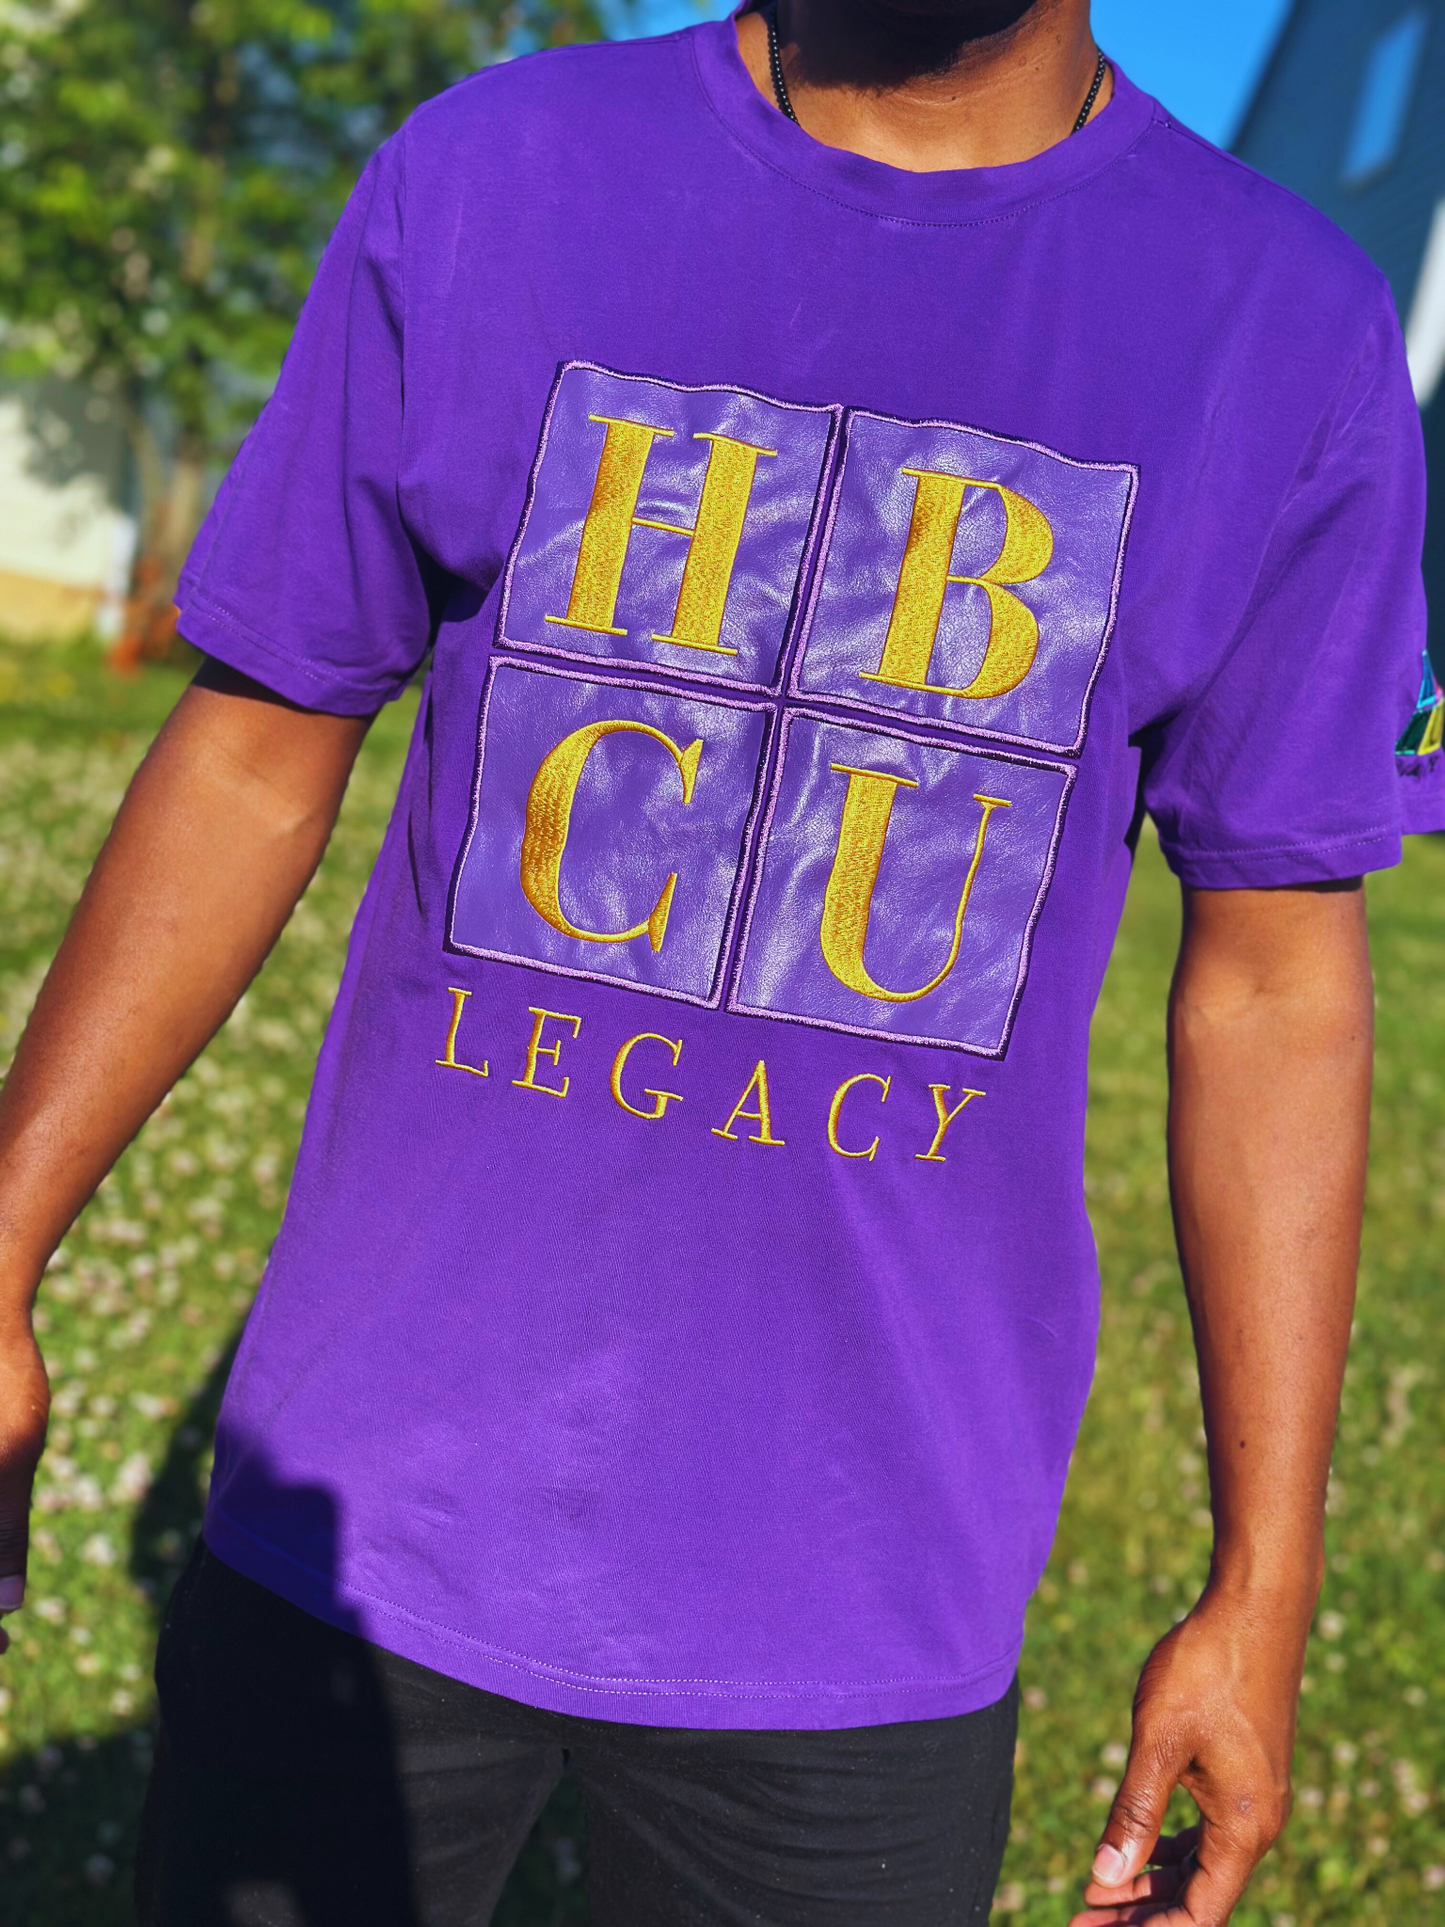 HBCU Legacy Adult T-Shirts